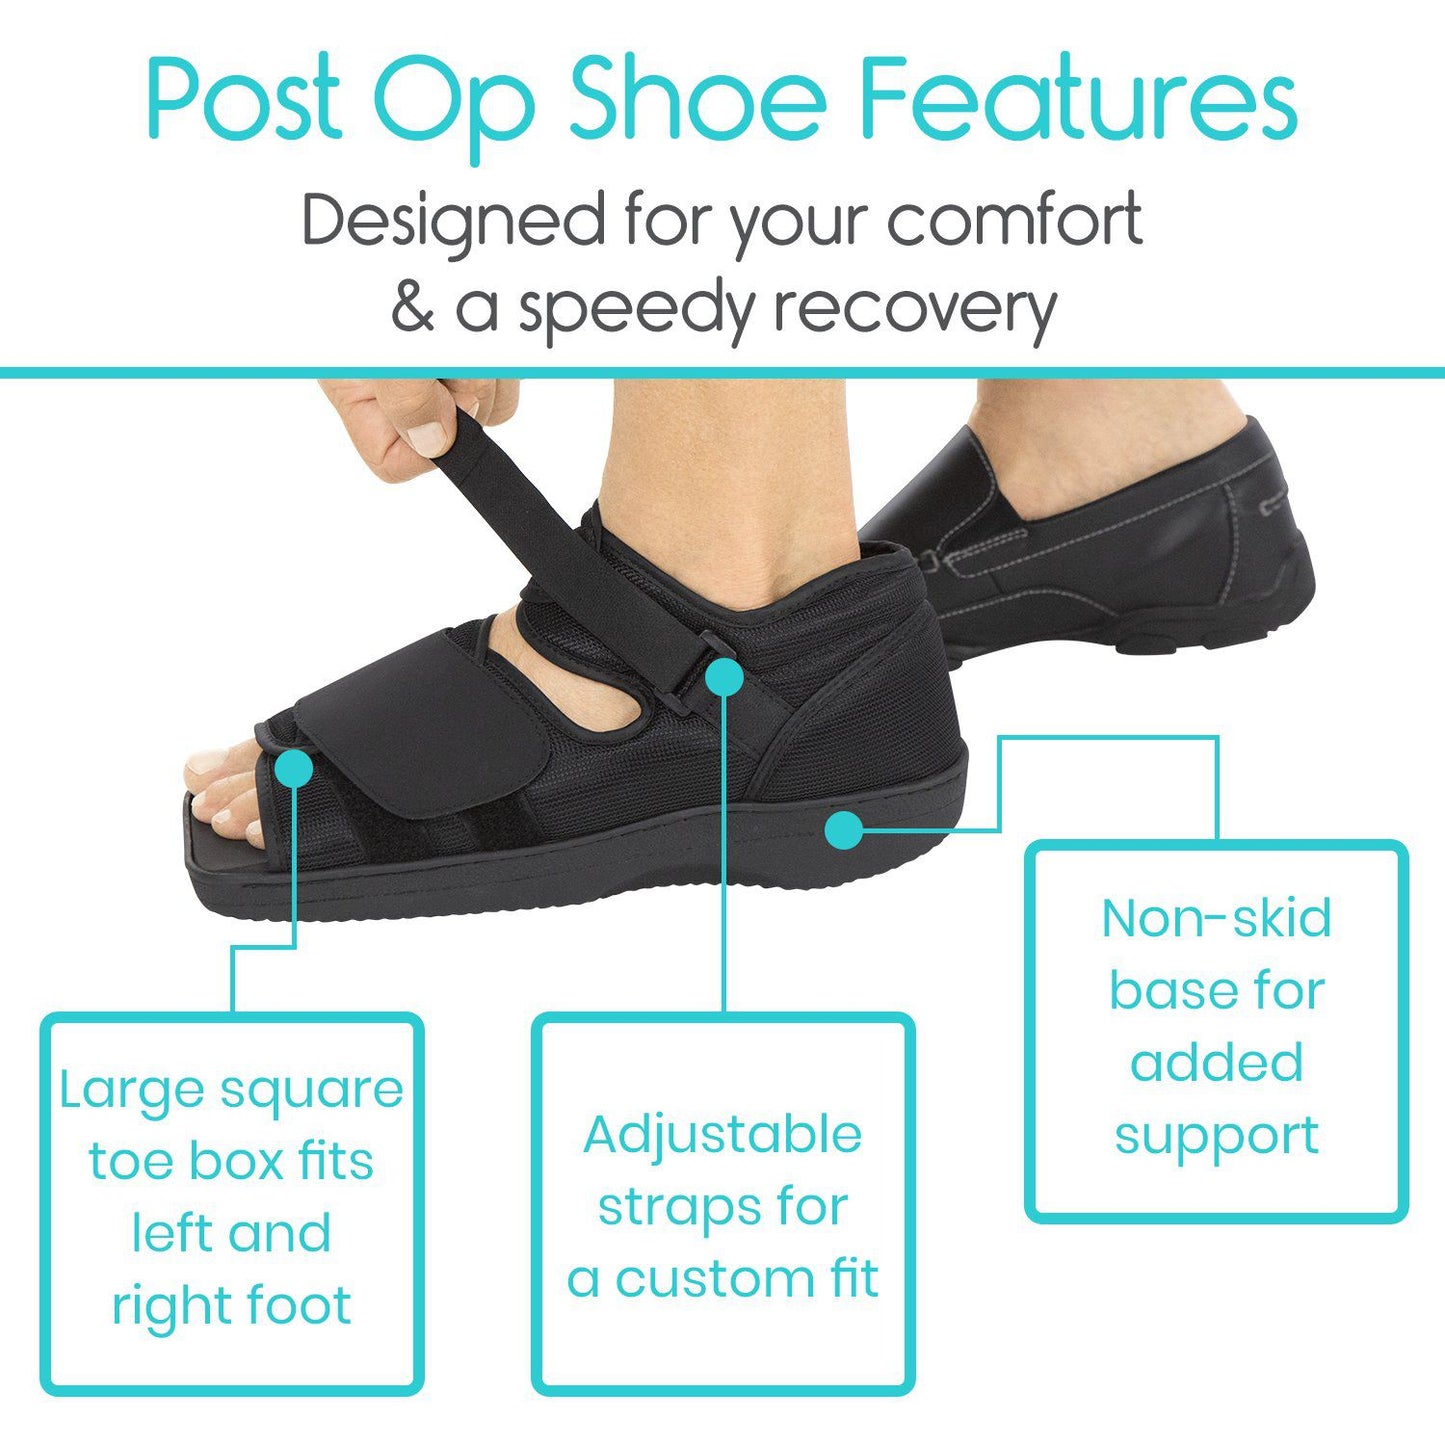 Post Op Shoe